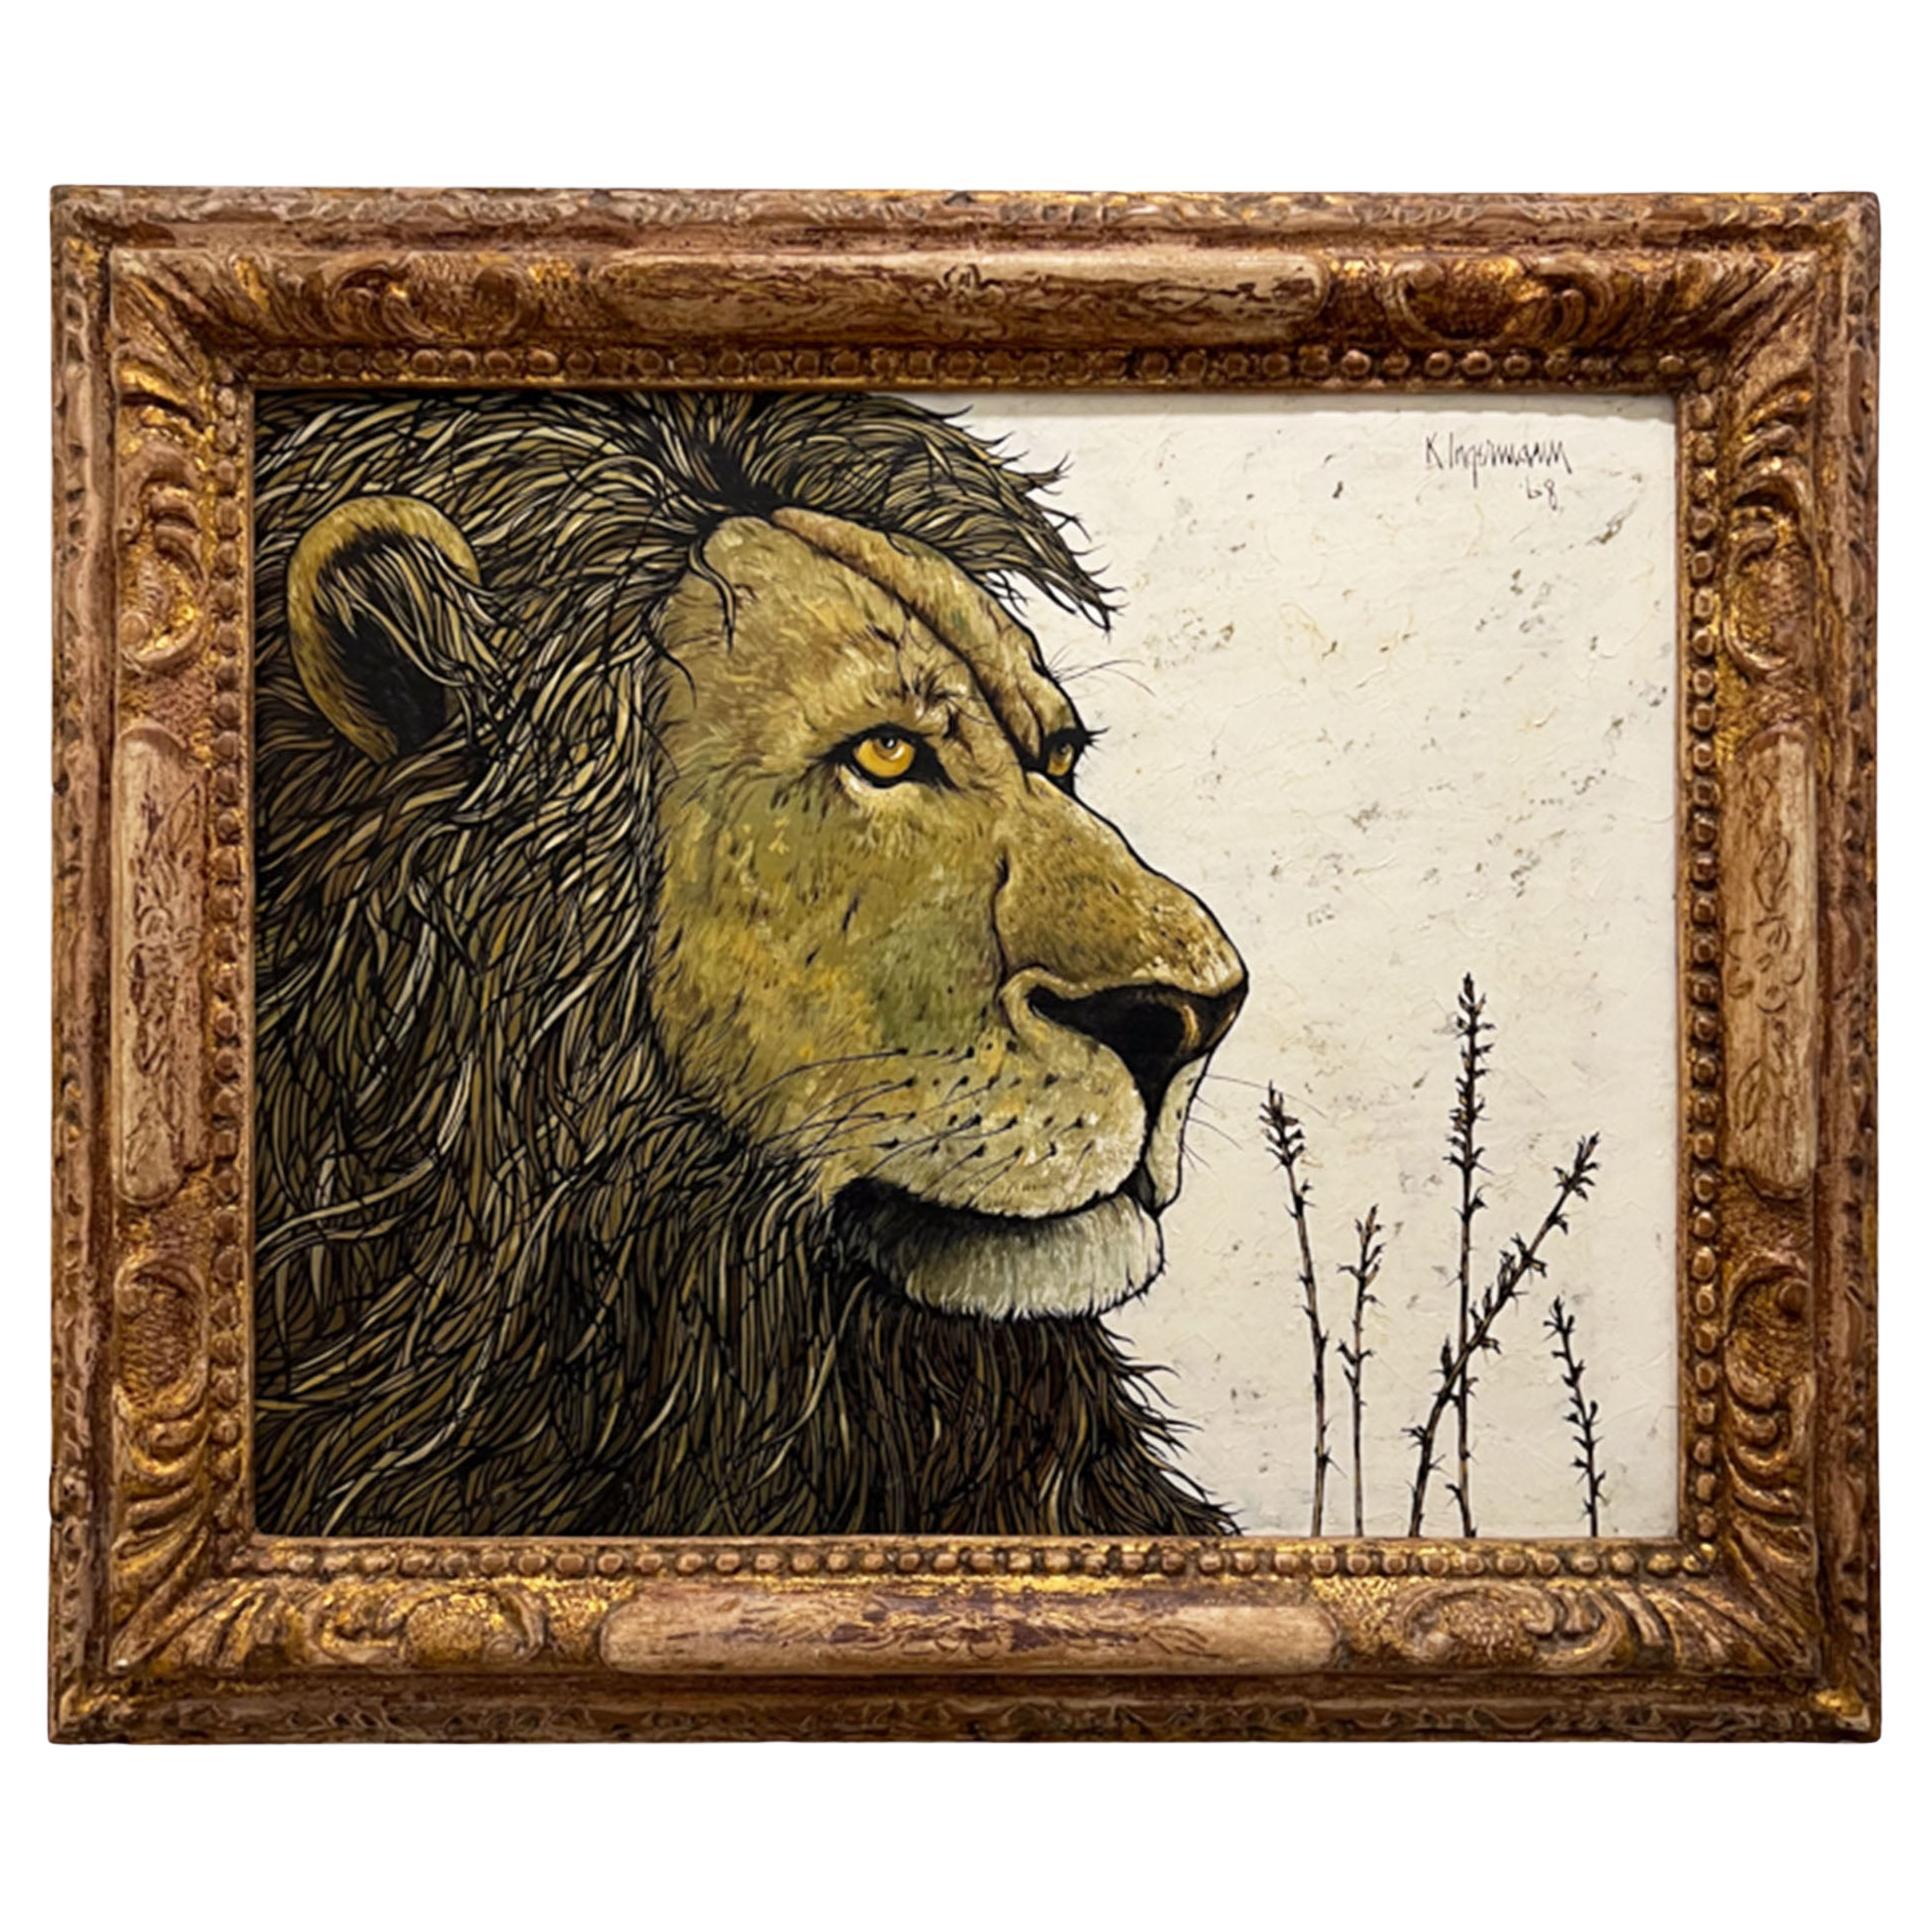 'A Lion's Head' 1968 Oil on Board, K Ingerman 1929 - 2012